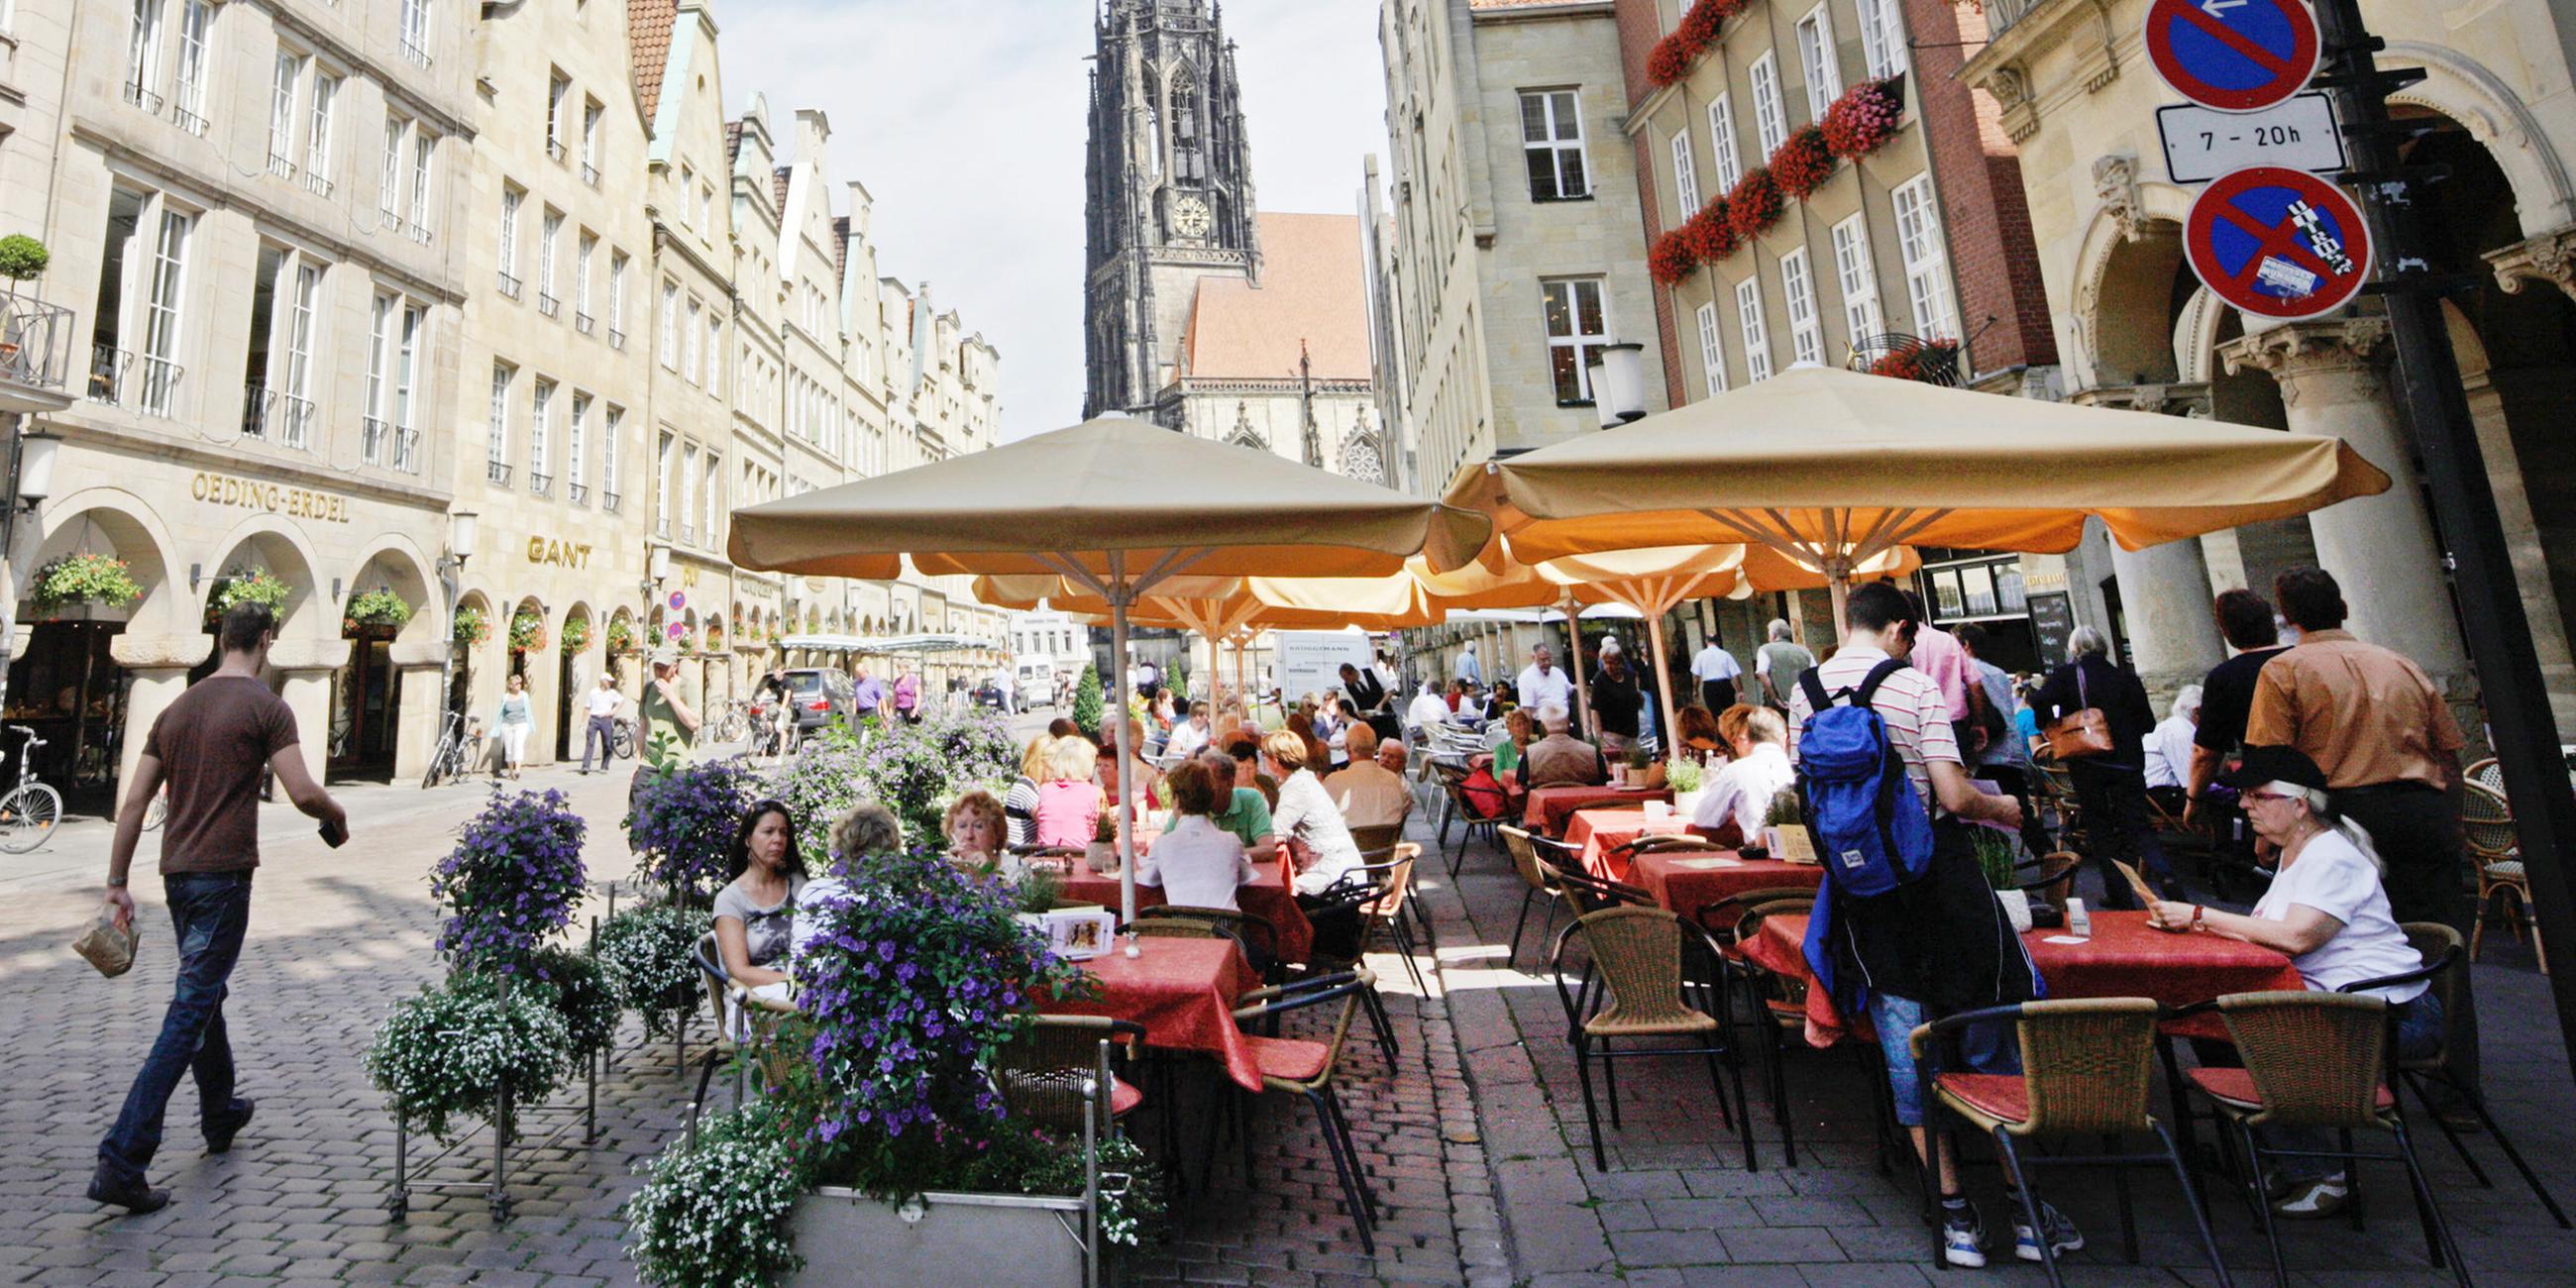 Straßencafé in der Innenstadt von Münster